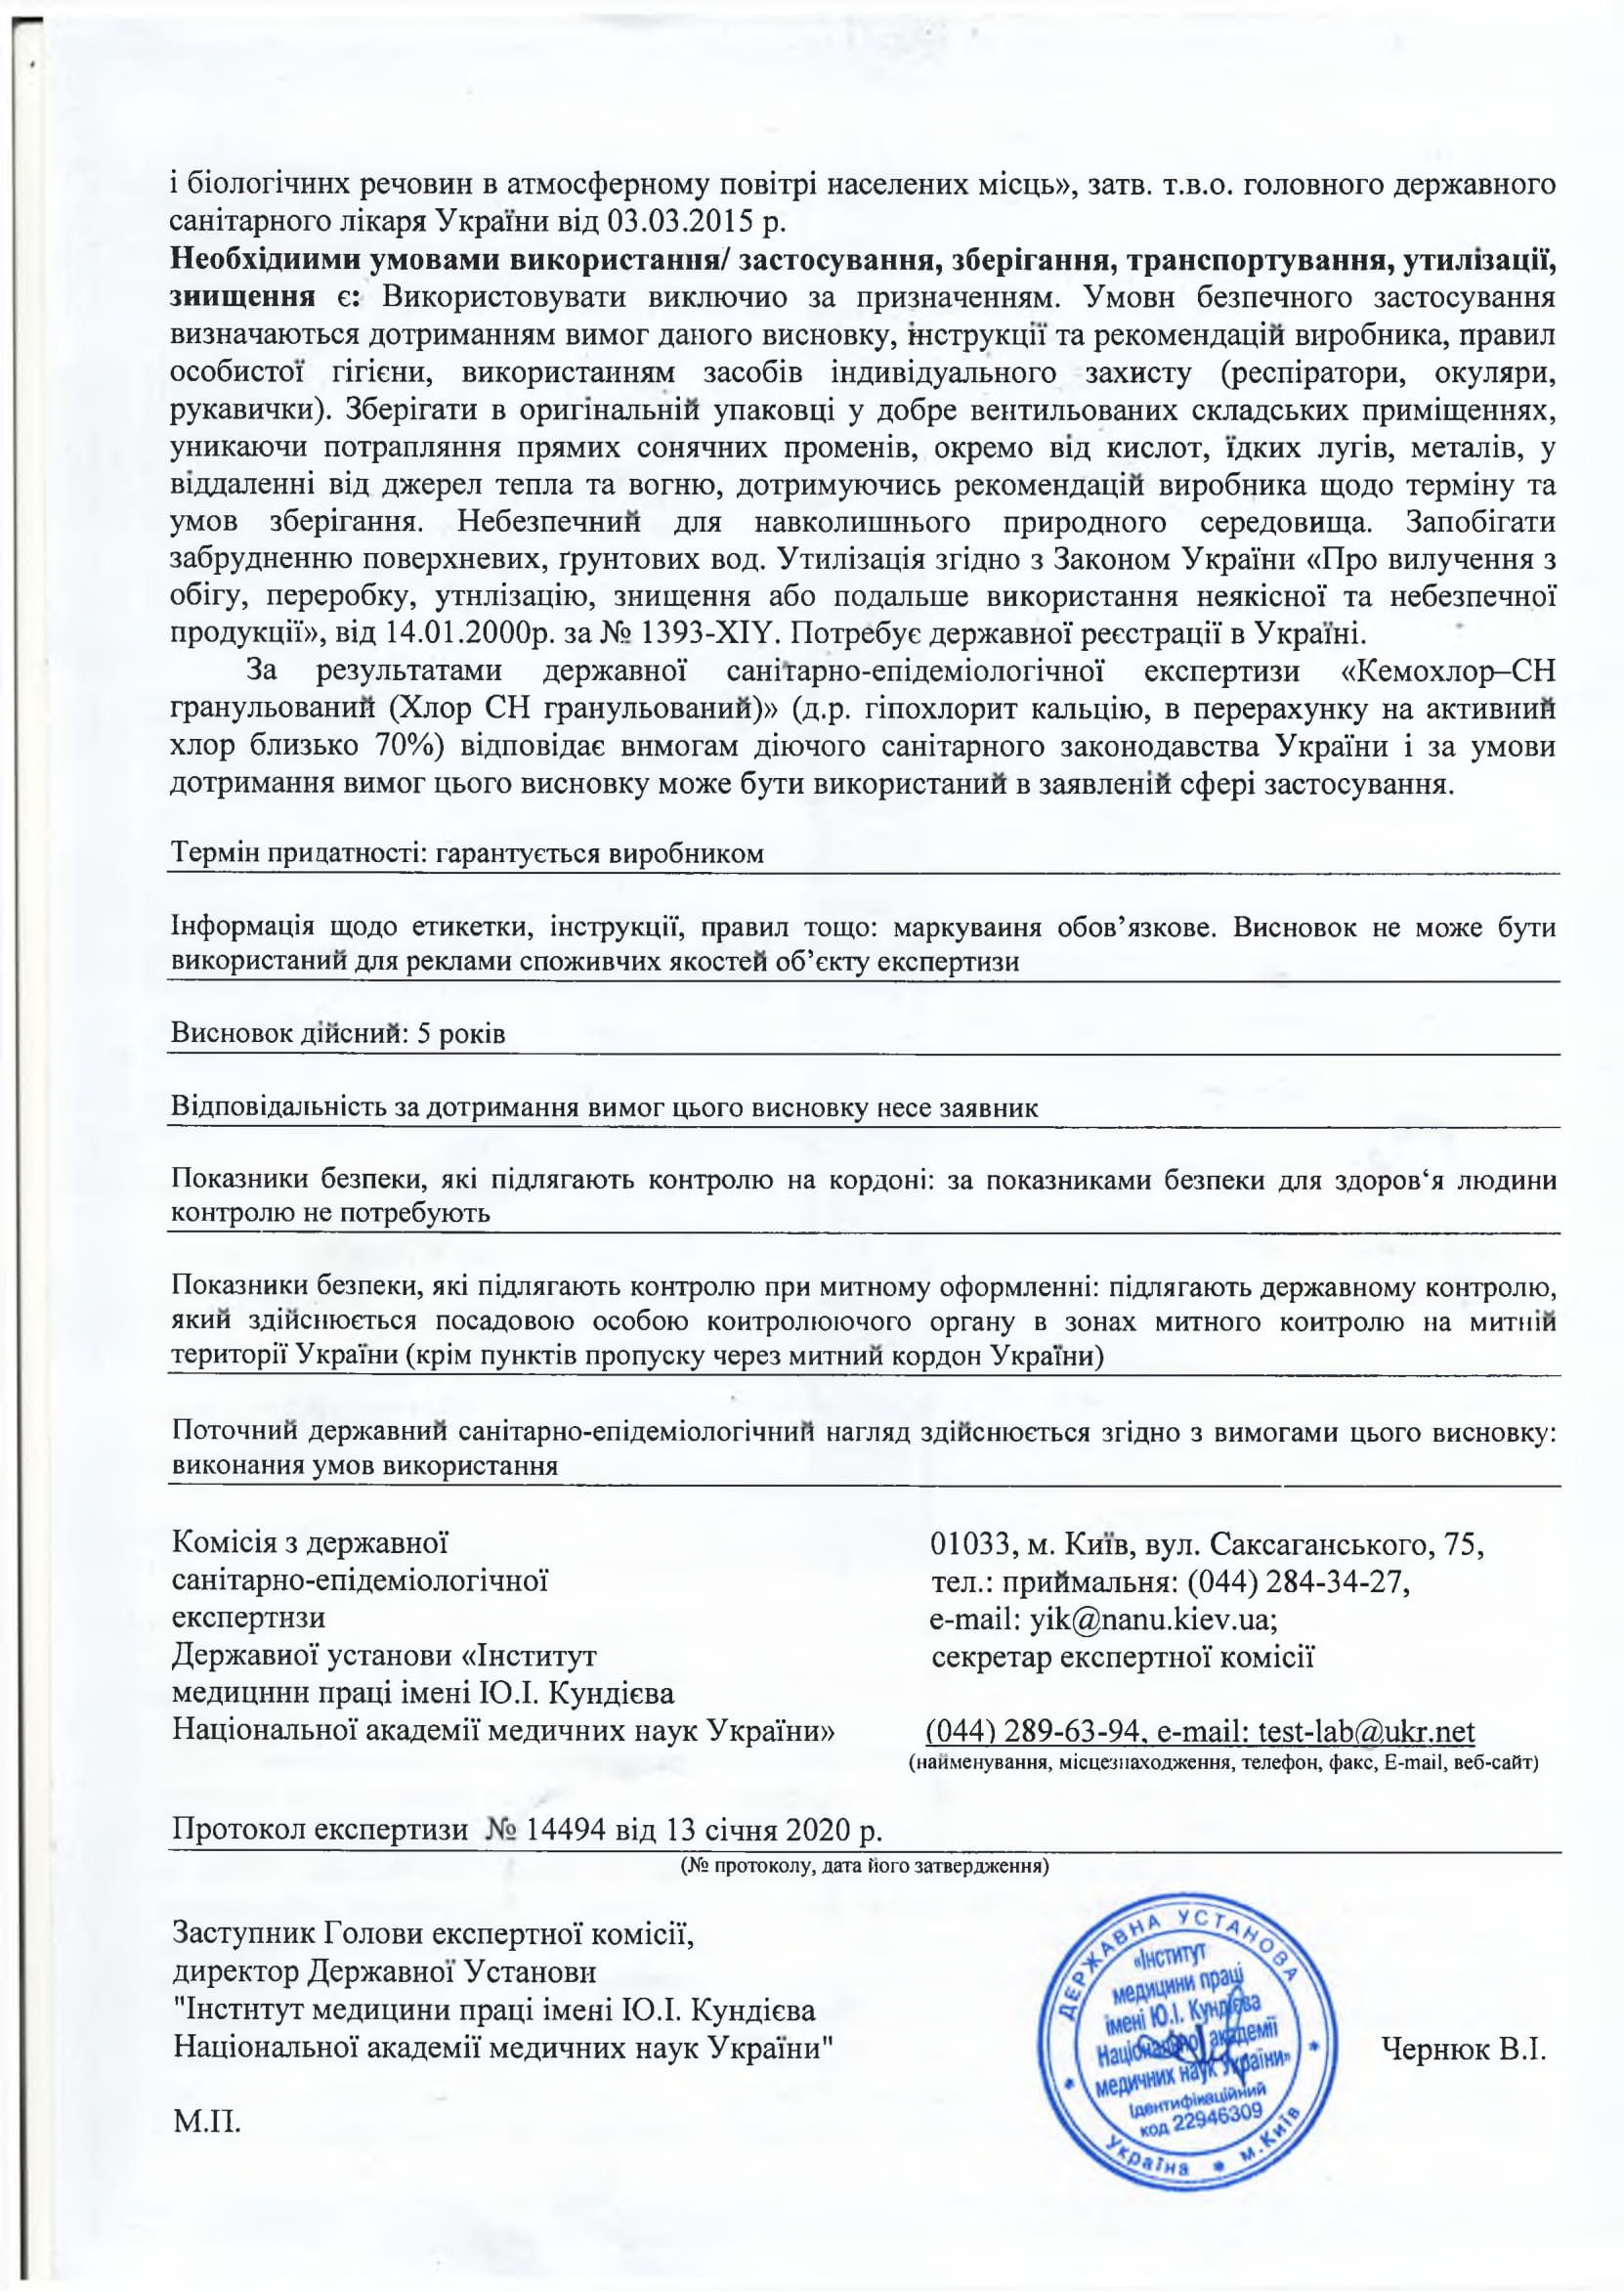 Кемохлор СН-гранулированный Chemoform, продавец Евроминерал Украина